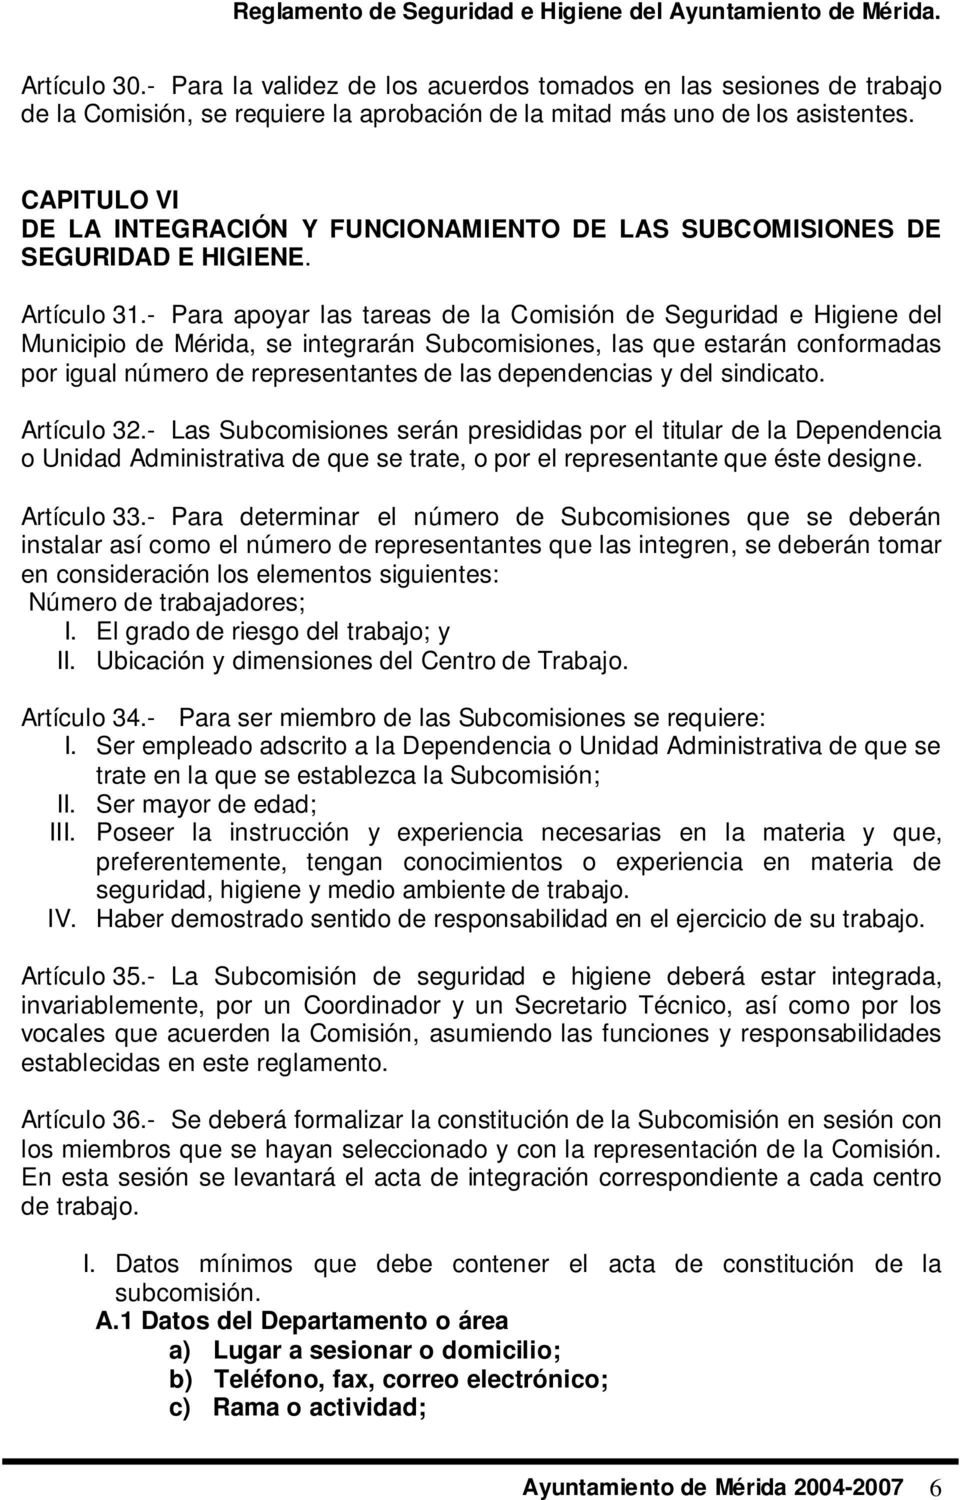 - Para apoyar las tareas de la Comisión de Seguridad e Higiene del Municipio de Mérida, se integrarán Subcomisiones, las que estarán conformadas por igual número de representantes de las dependencias